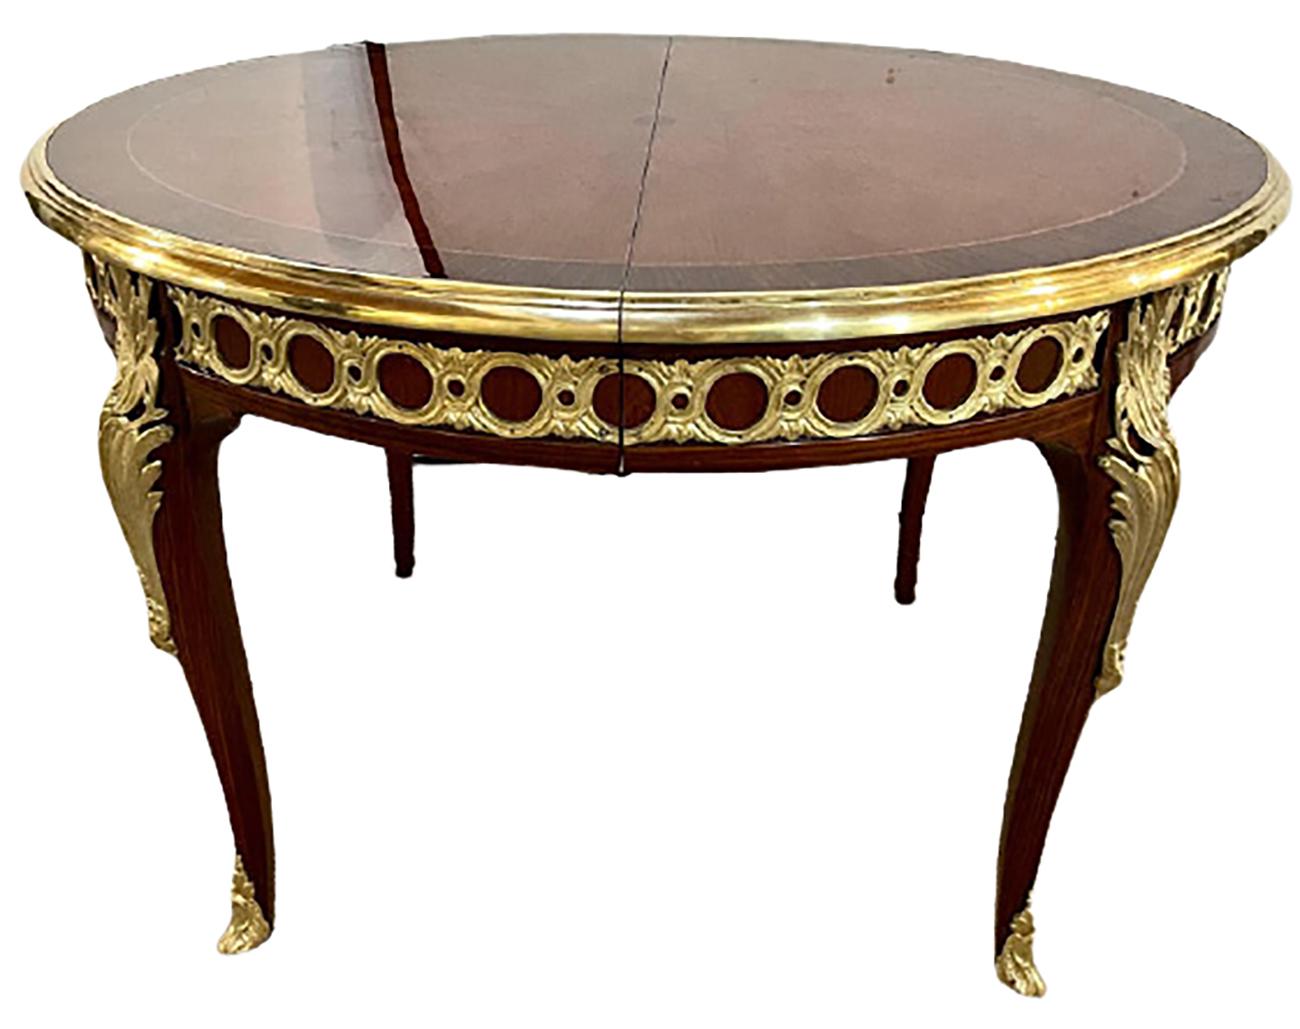 Einzigartiger Esstisch im Louis XV-Stil / Zentrum. Teil unserer umfangreichen Kollektion von über vierzig Esstischen und Stuhlsets, die Sie auf dieser Website finden, weshalb wir auch als König der Esszimmer bezeichnet werden.
 
 
Dieser einfach